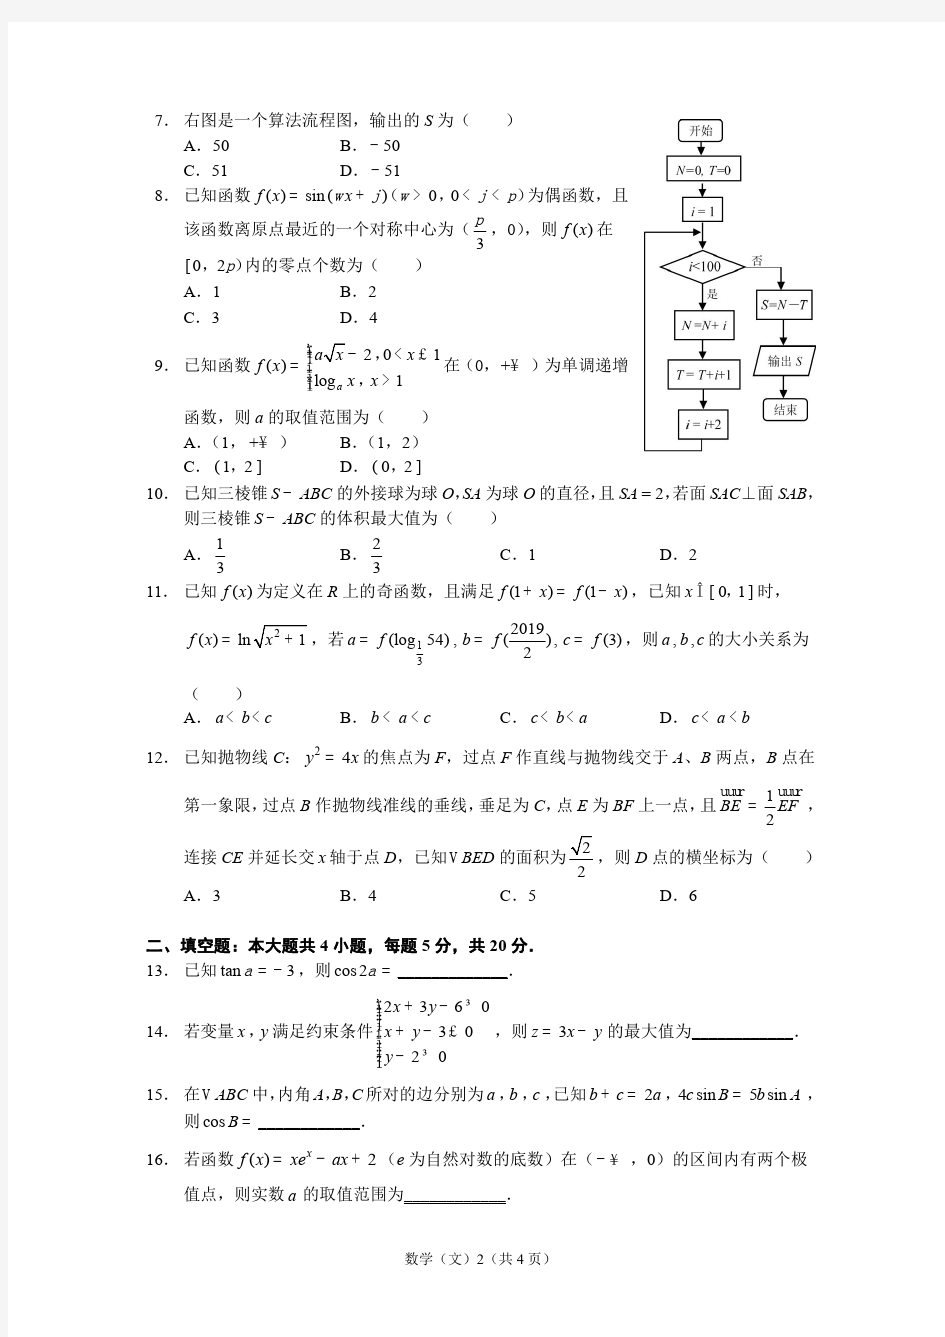 【文数】2020年哈三中普通高考模拟试卷(一)文科数学_20200331_153537